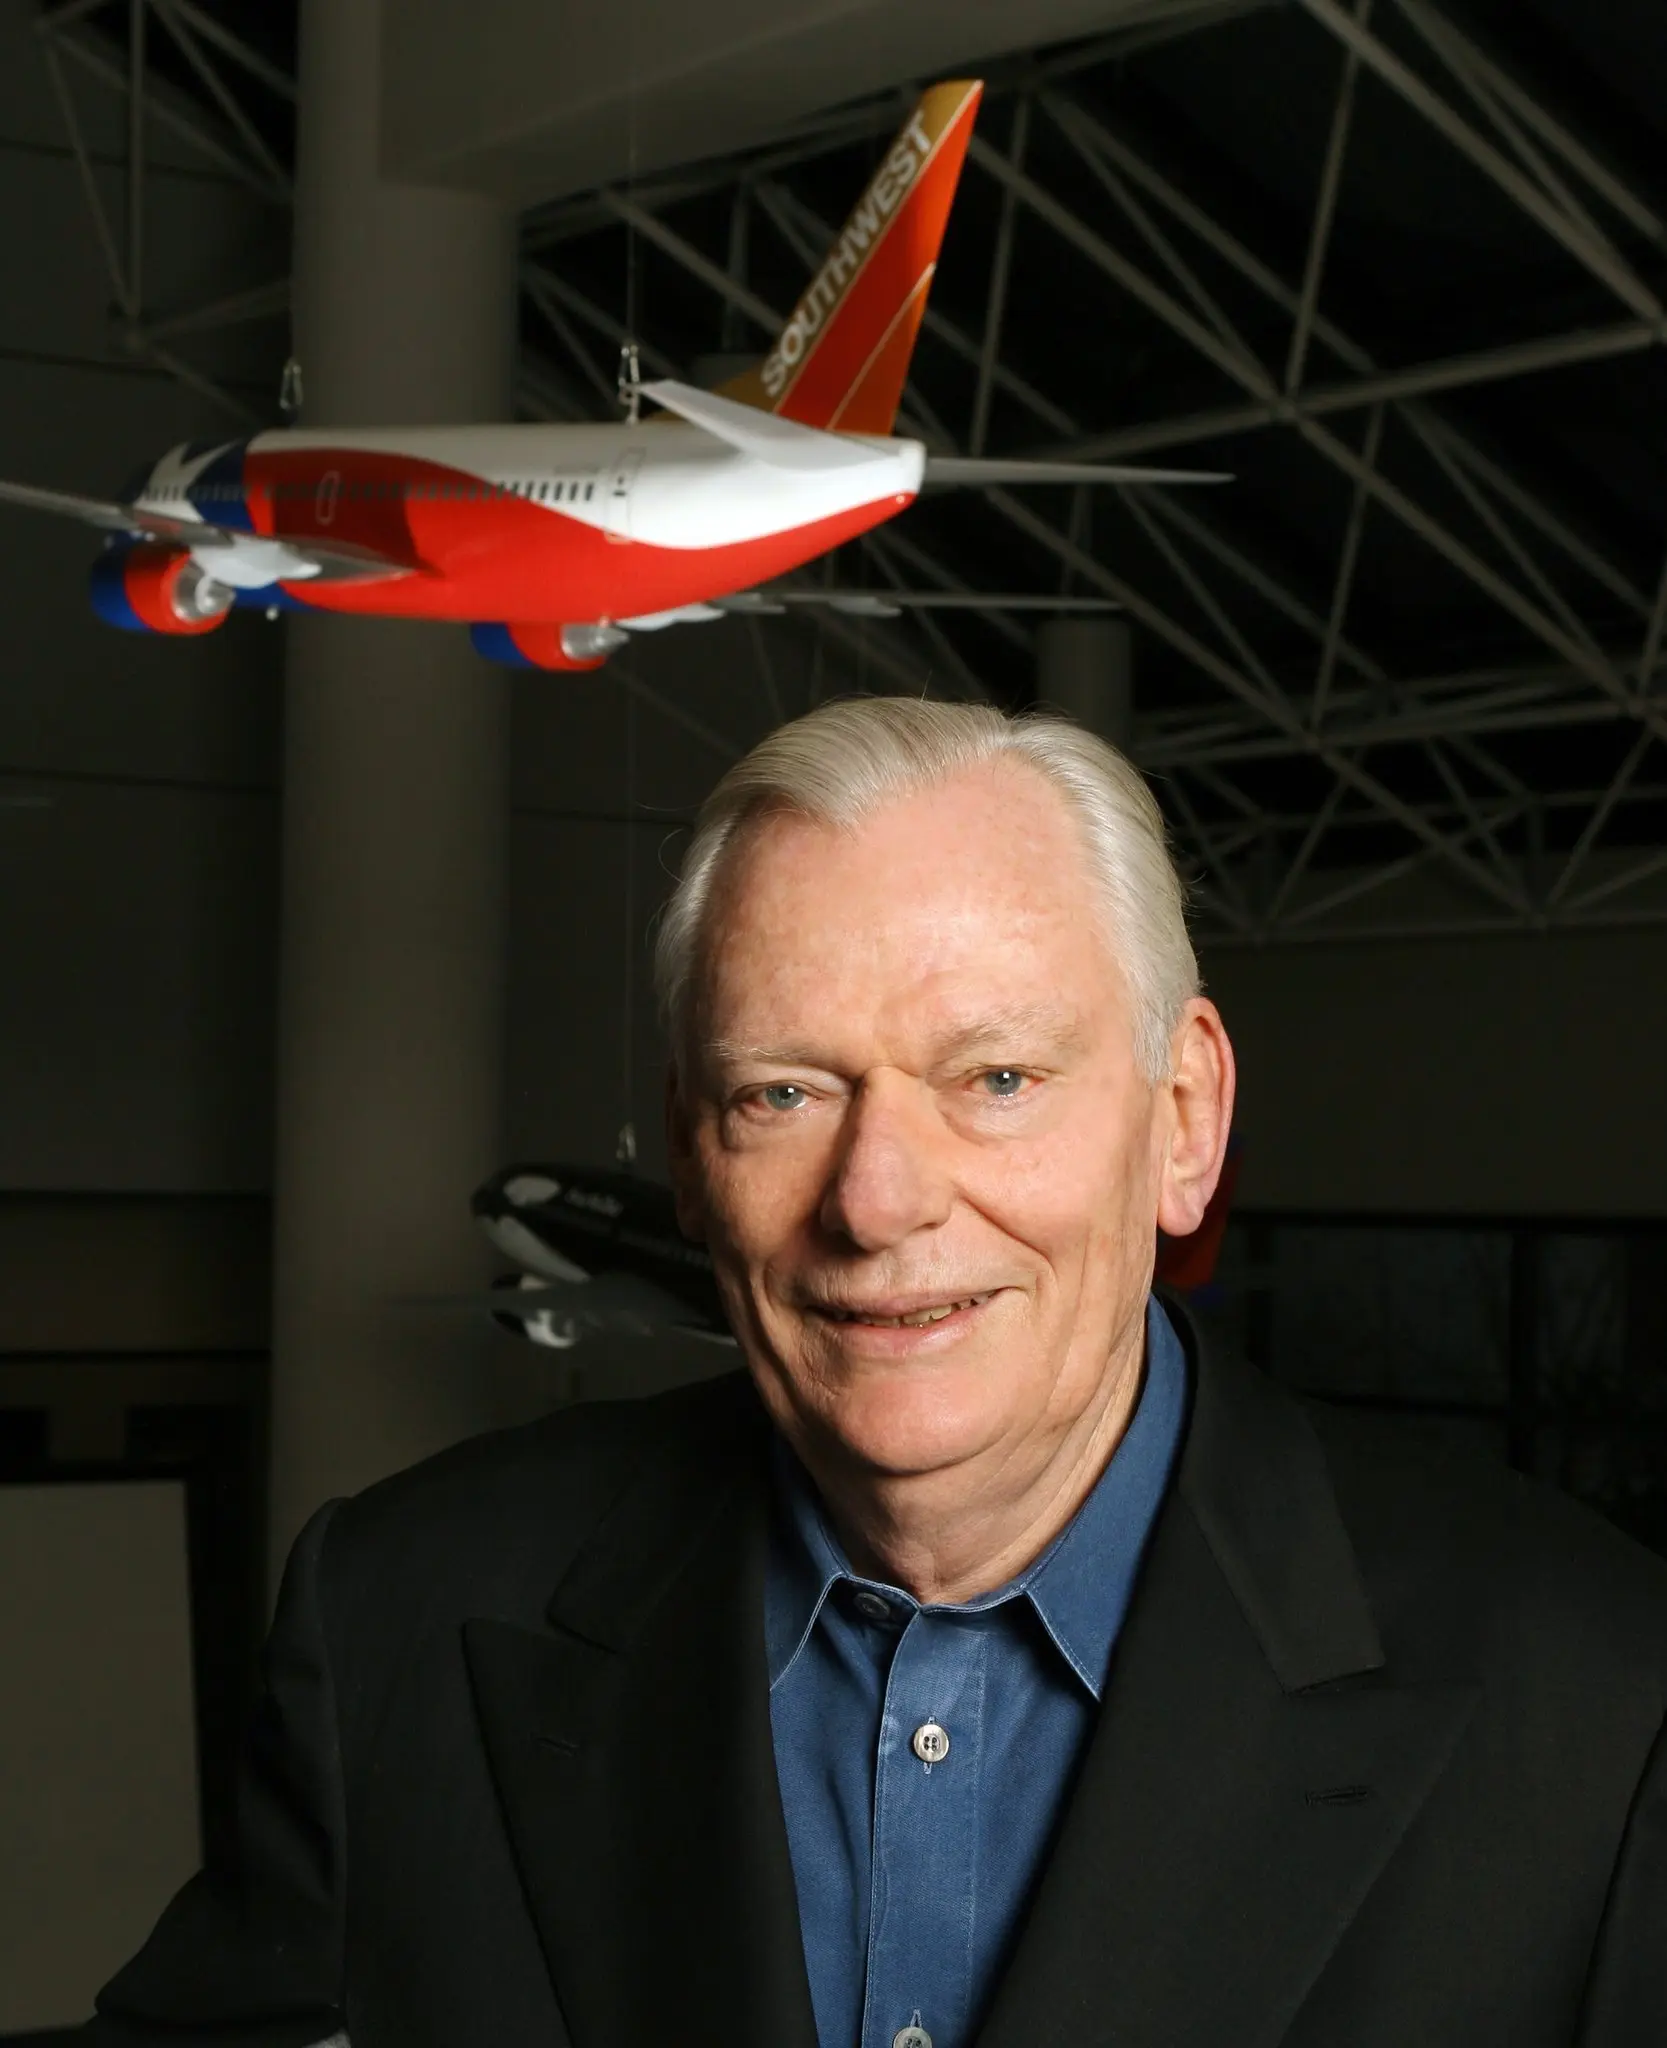 Herb Kelleher na sede da Southwest Airlines em Dallas em 2005. “Ele literalmente levou as viagens aéreas às massas em uma escala inimaginável”, disse um analista do setor.Crédito...David Woo/Corbis, via Getty Images